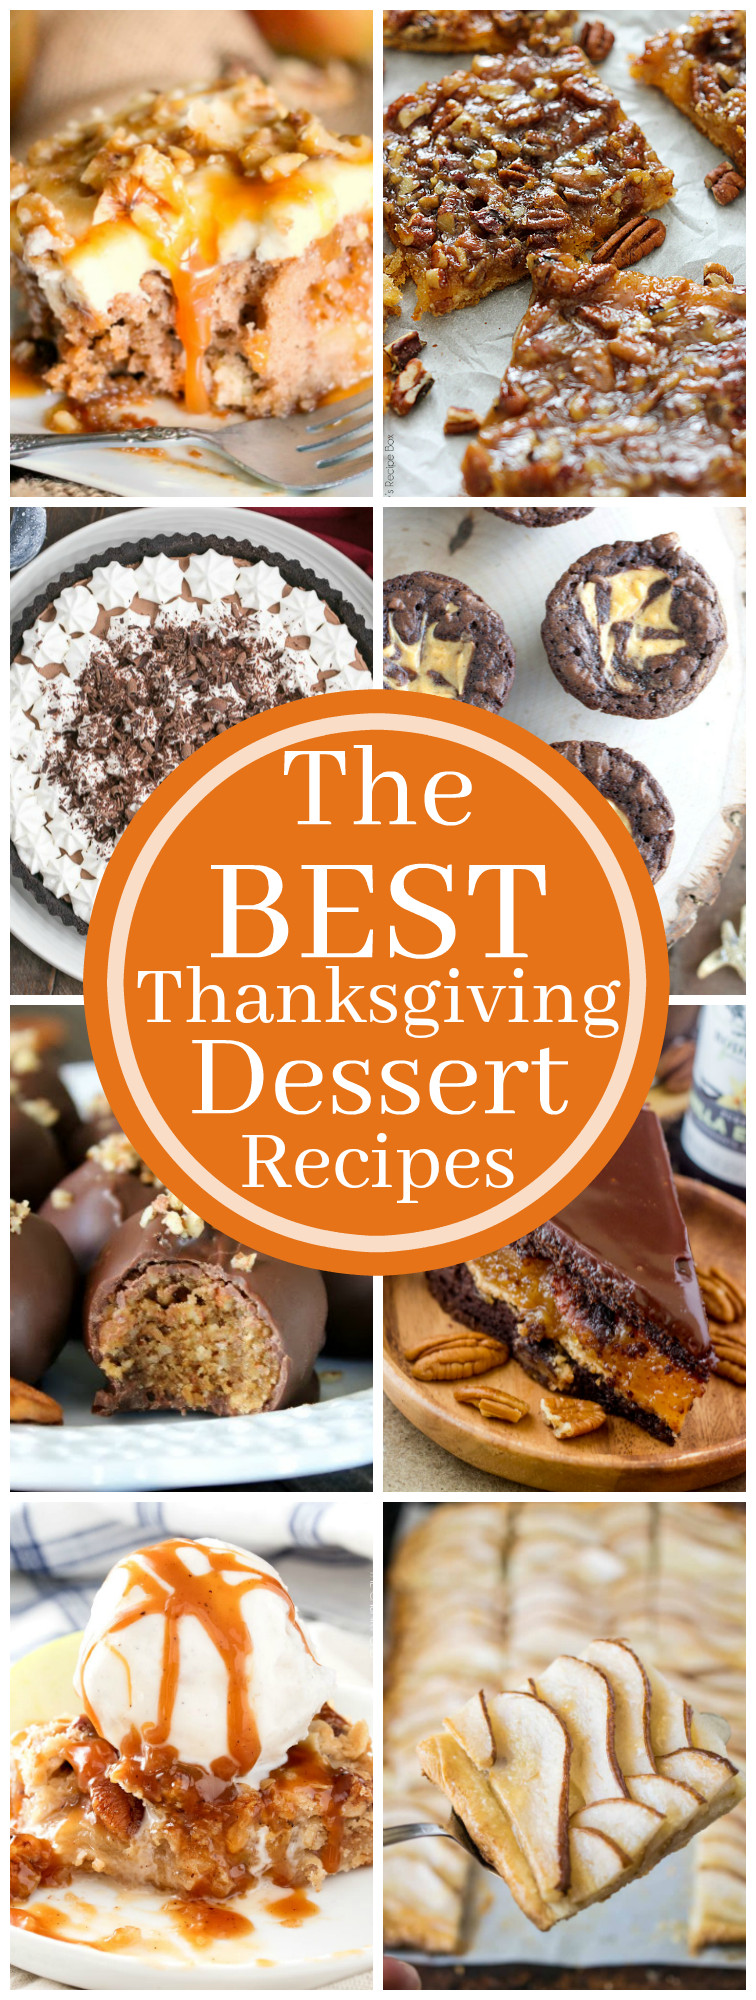 Easy Thanksgiving Desserts Pinterest
 Best Thanksgiving Dessert Recipes Kleinworth & Co